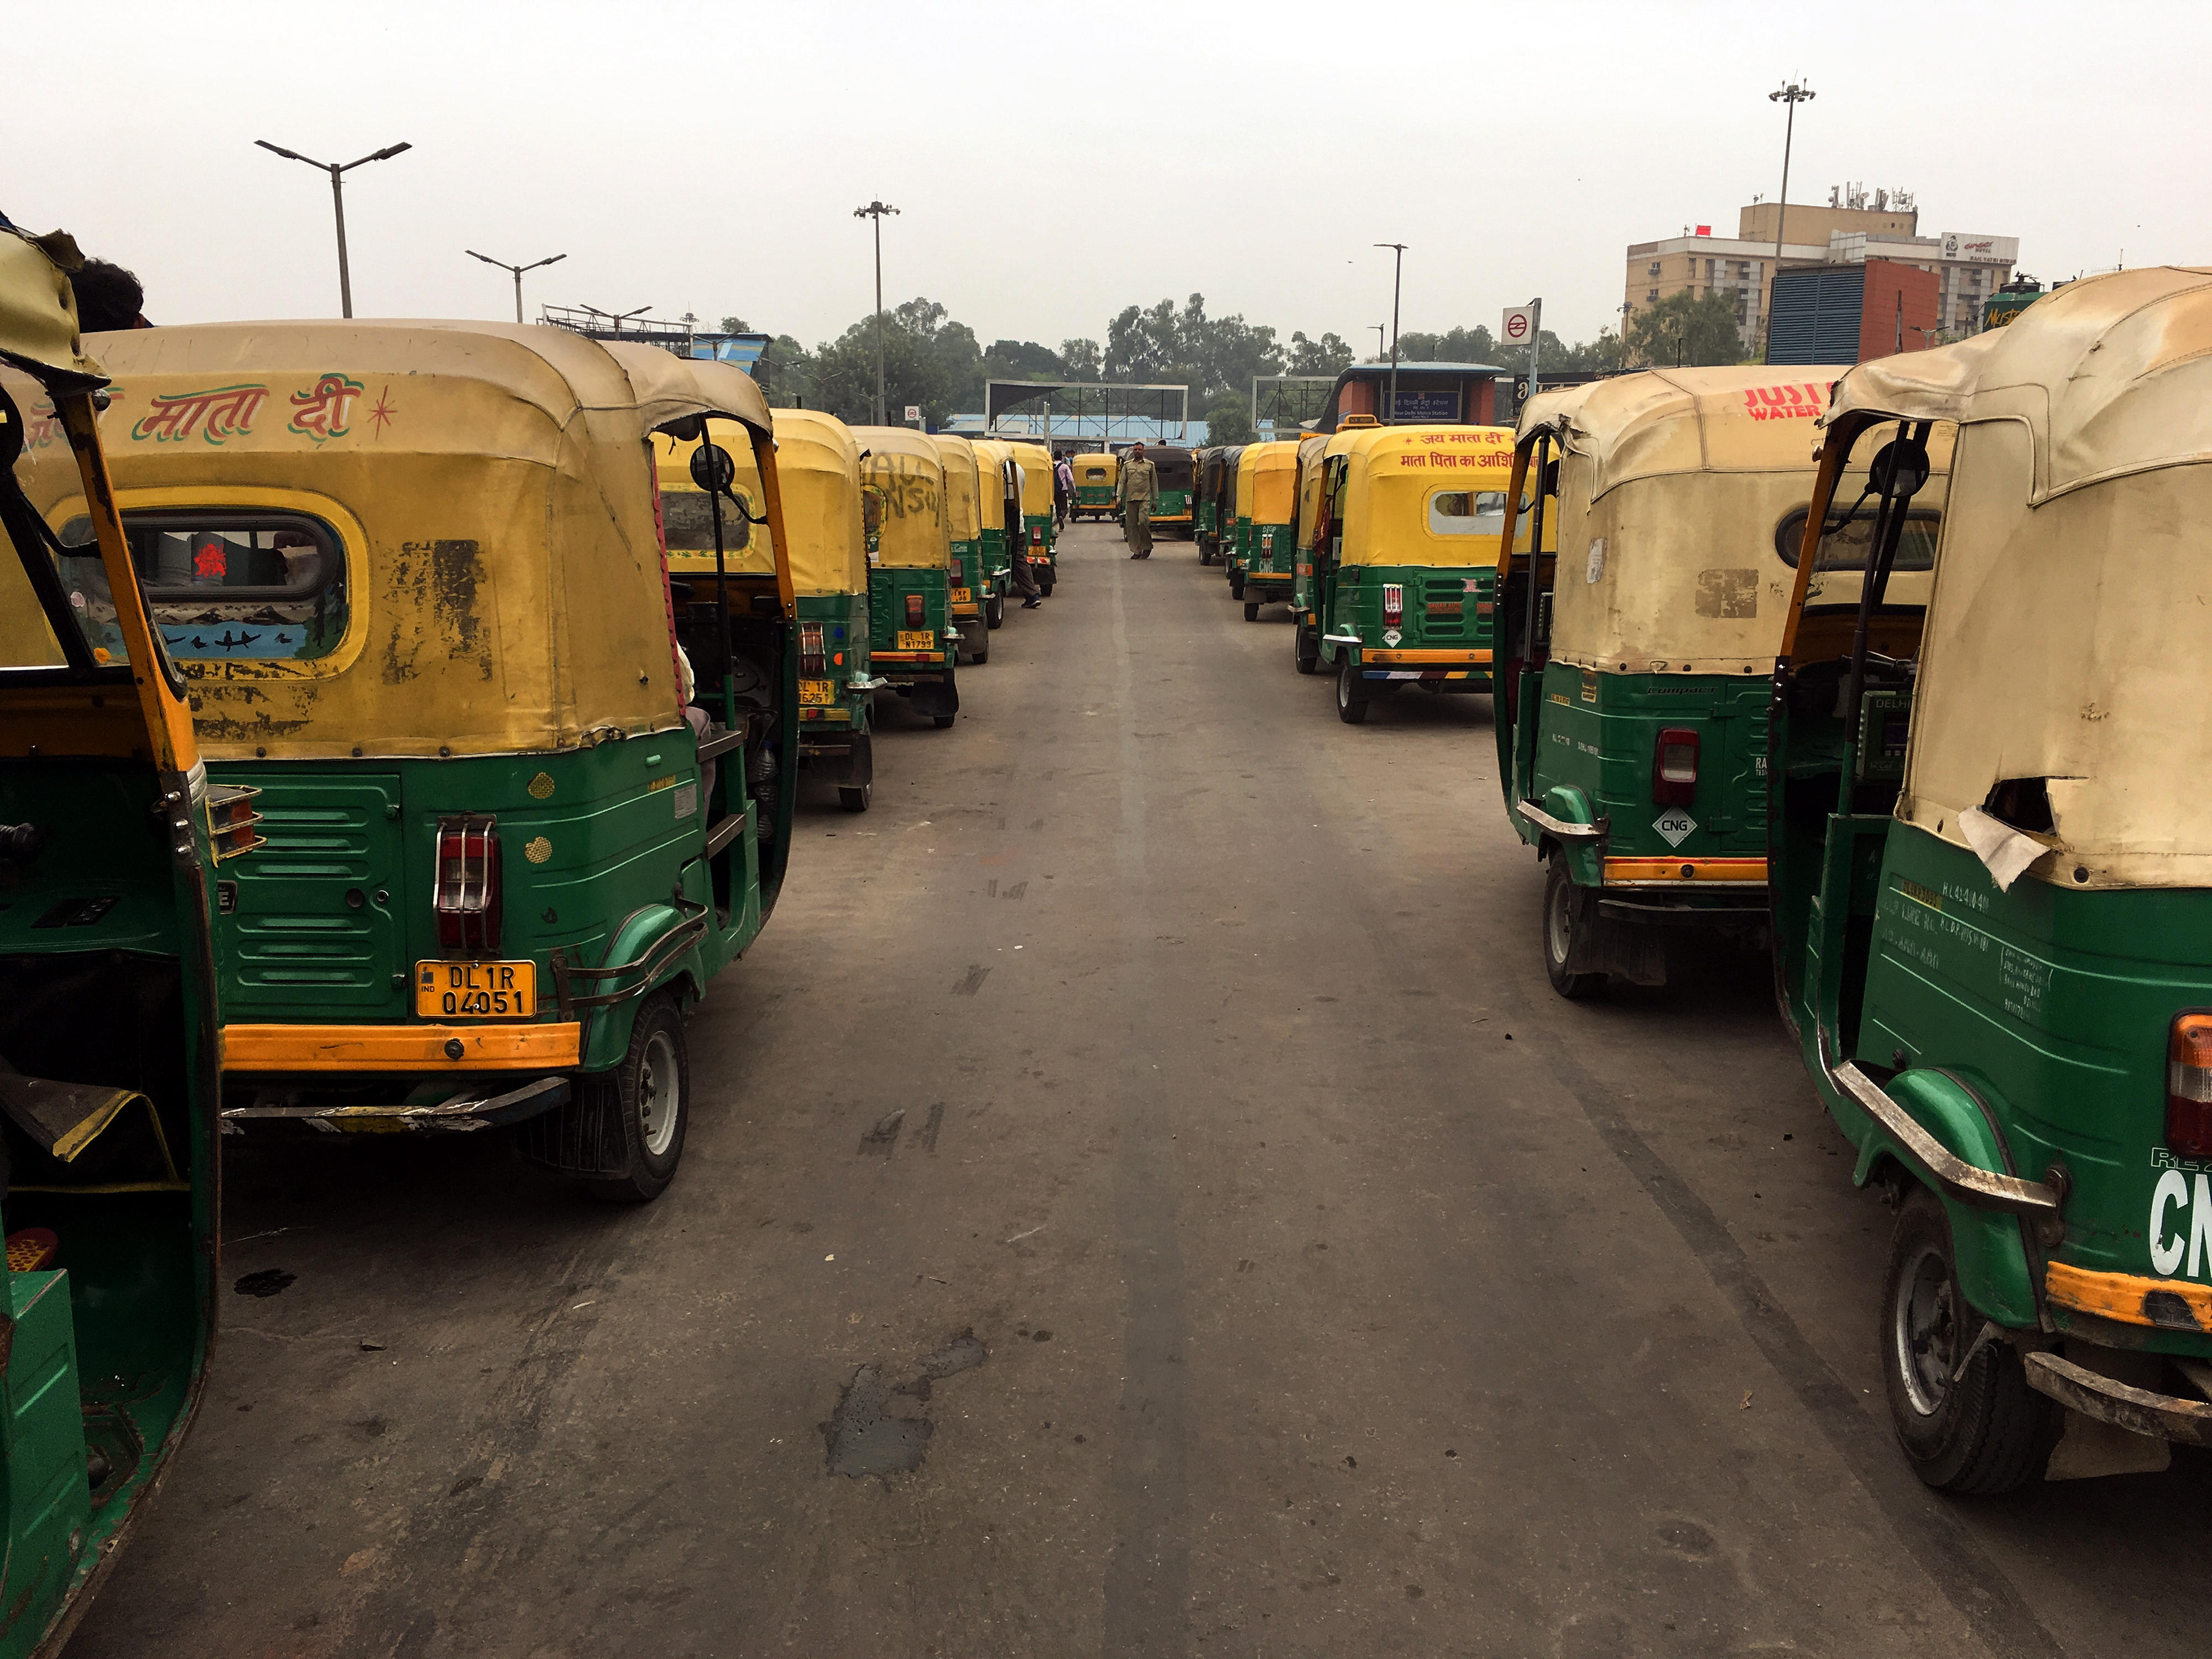 Motorrad-Taxis stehen in zwei langen Reihen nebeneinander auf einer Straße in Delhi, Indien.